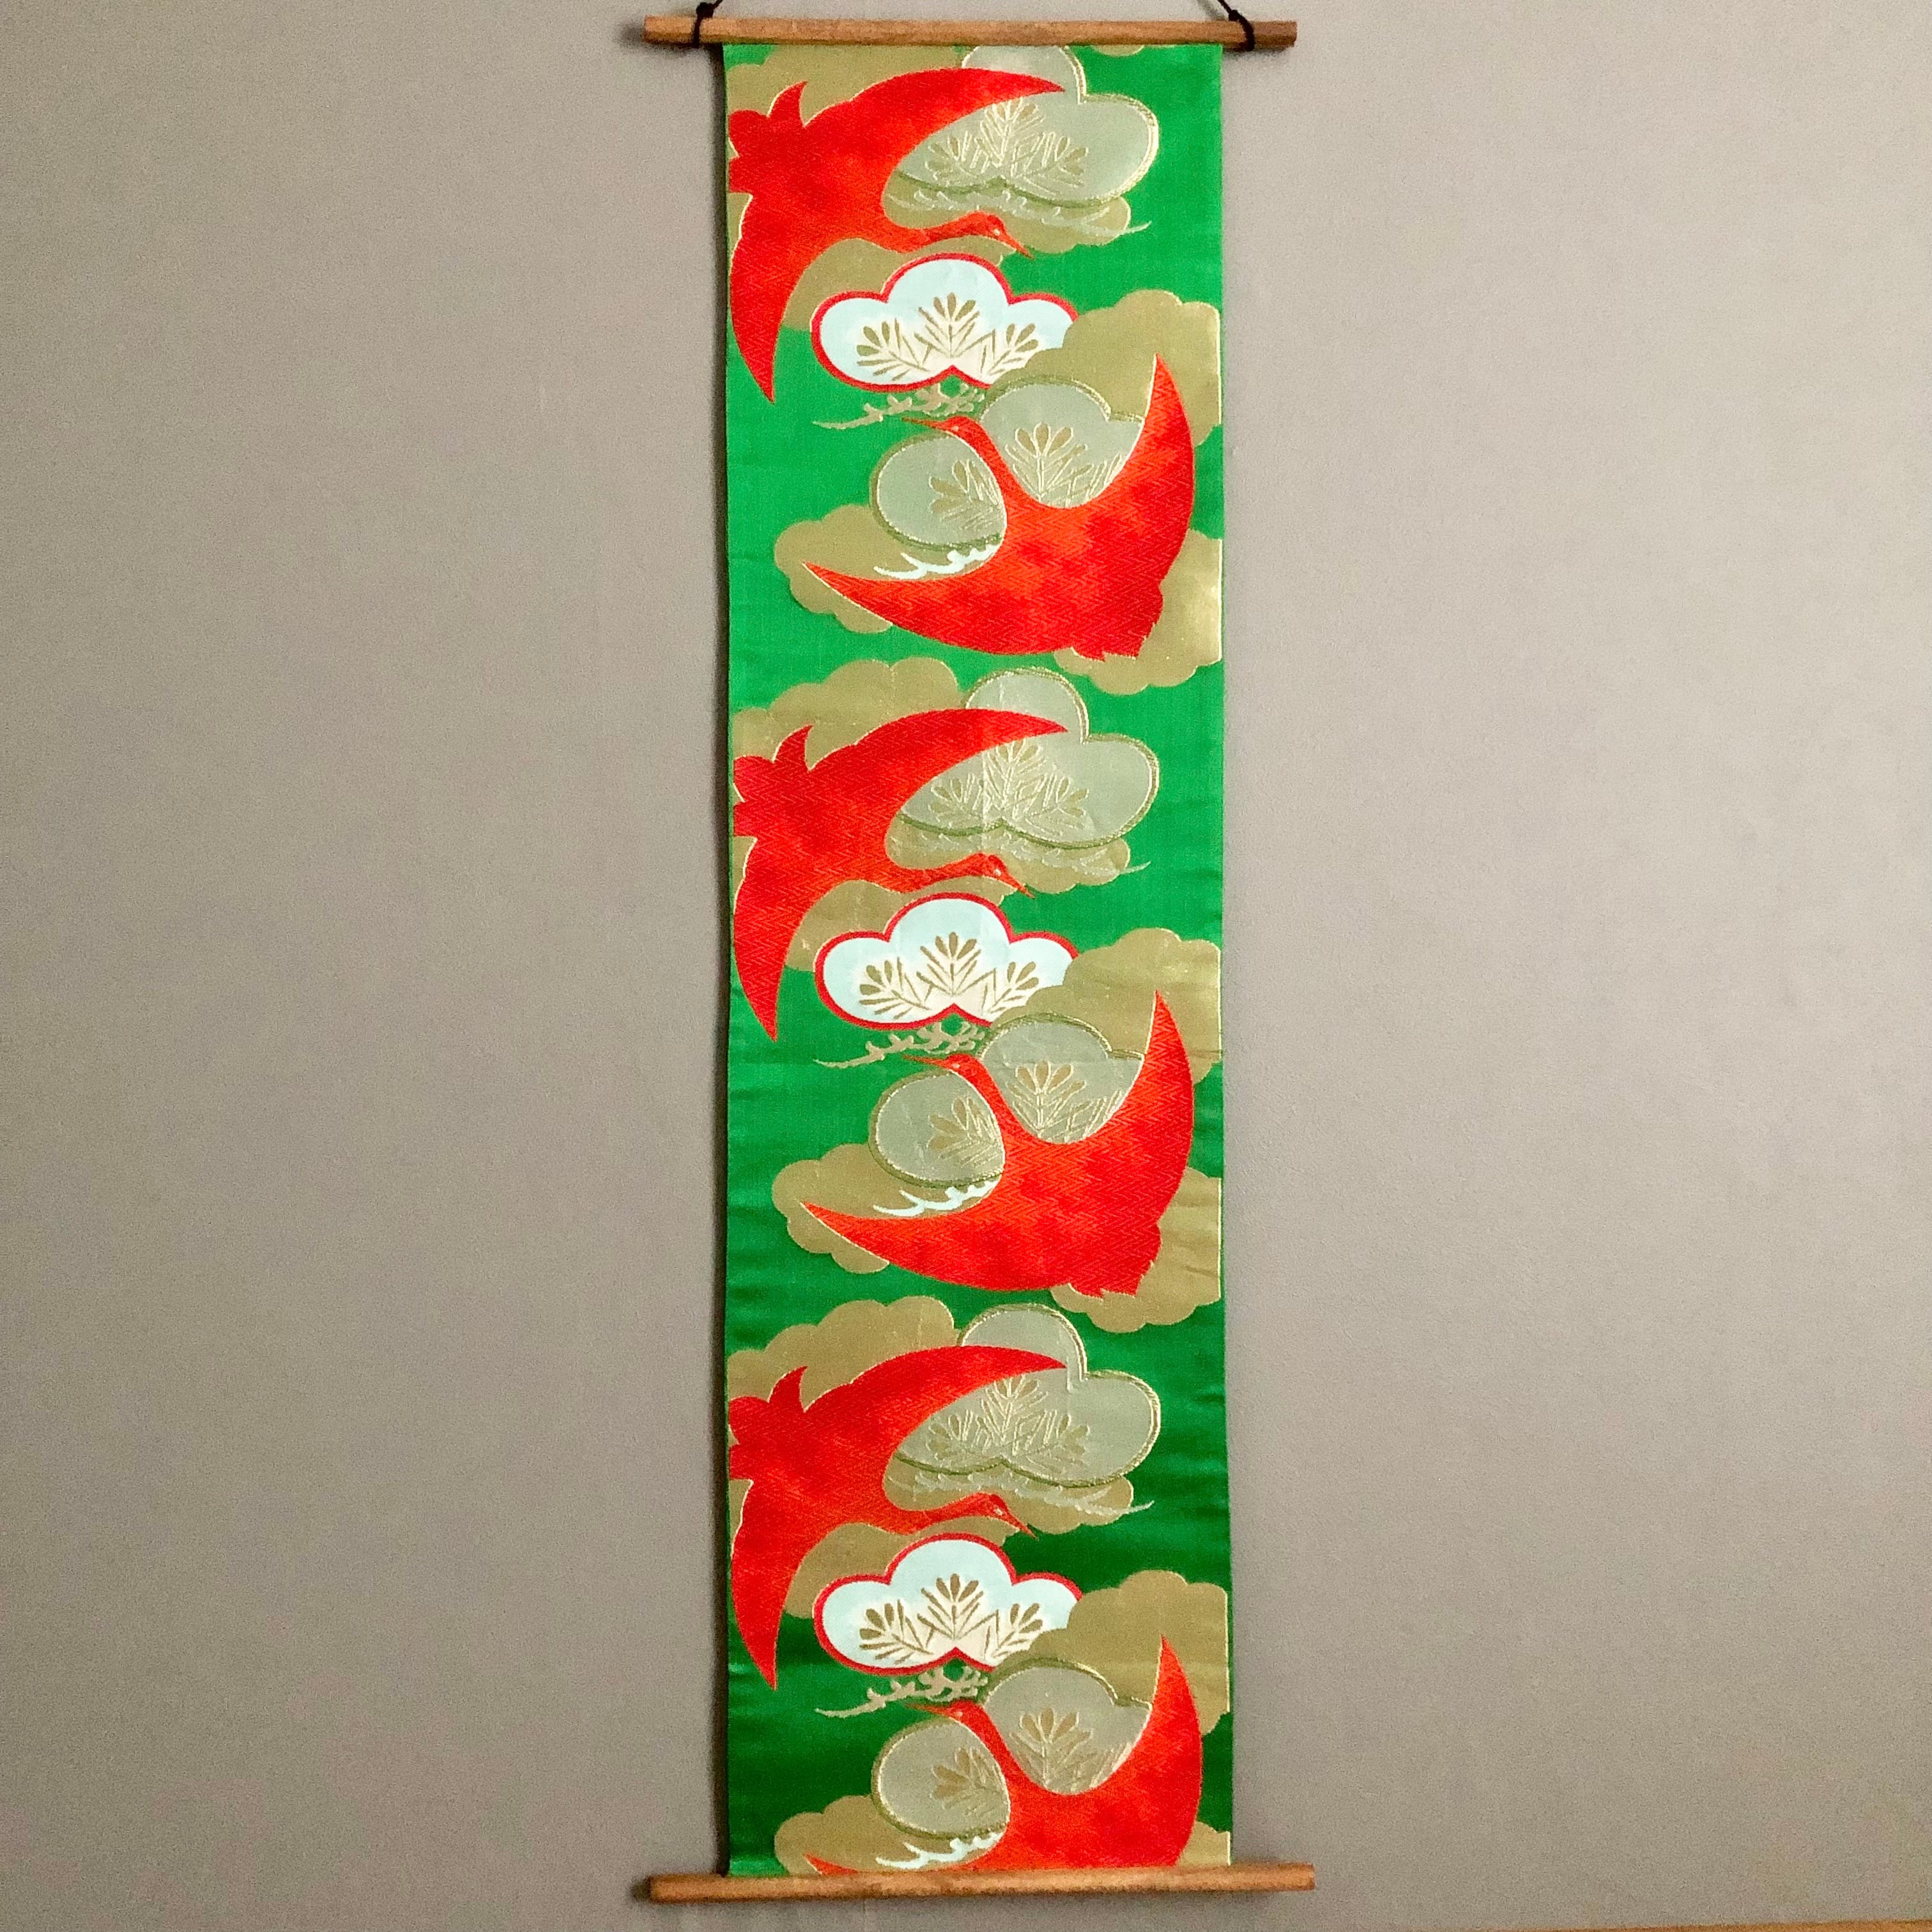 帯のタペストリー 鮮やかな緑に赤の鶴 着物リメイク インテリア クリスマス 正月飾り 掛け軸 Le beau monde